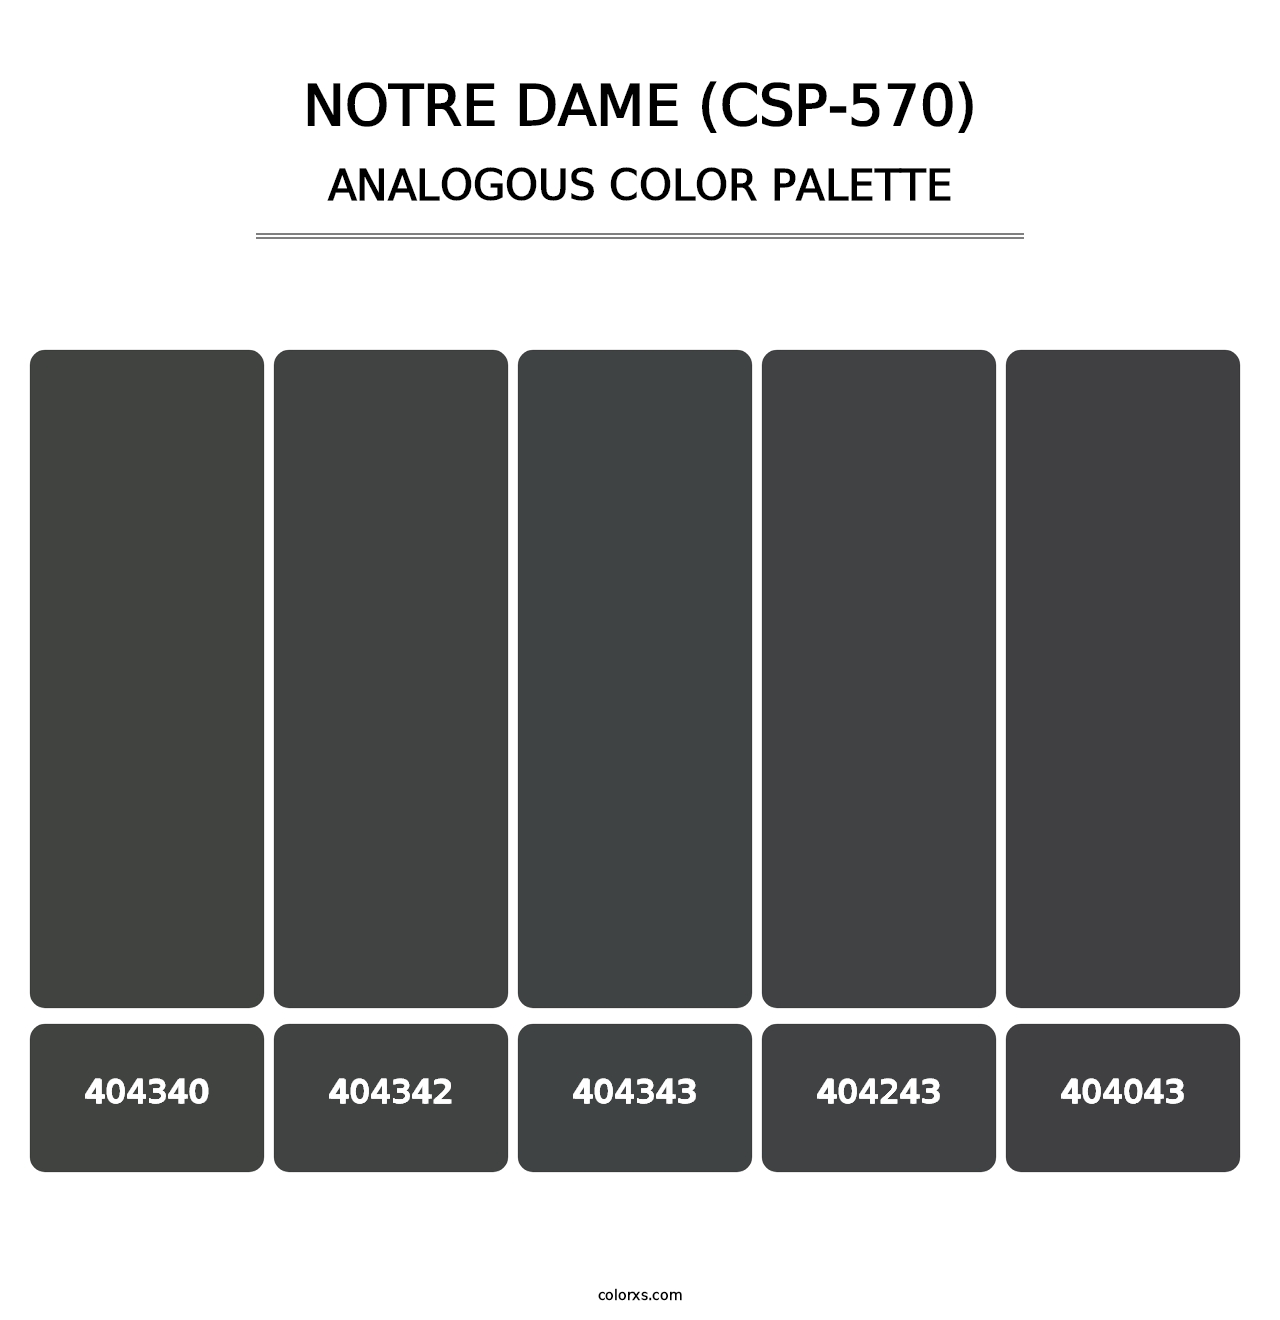 Notre Dame (CSP-570) - Analogous Color Palette